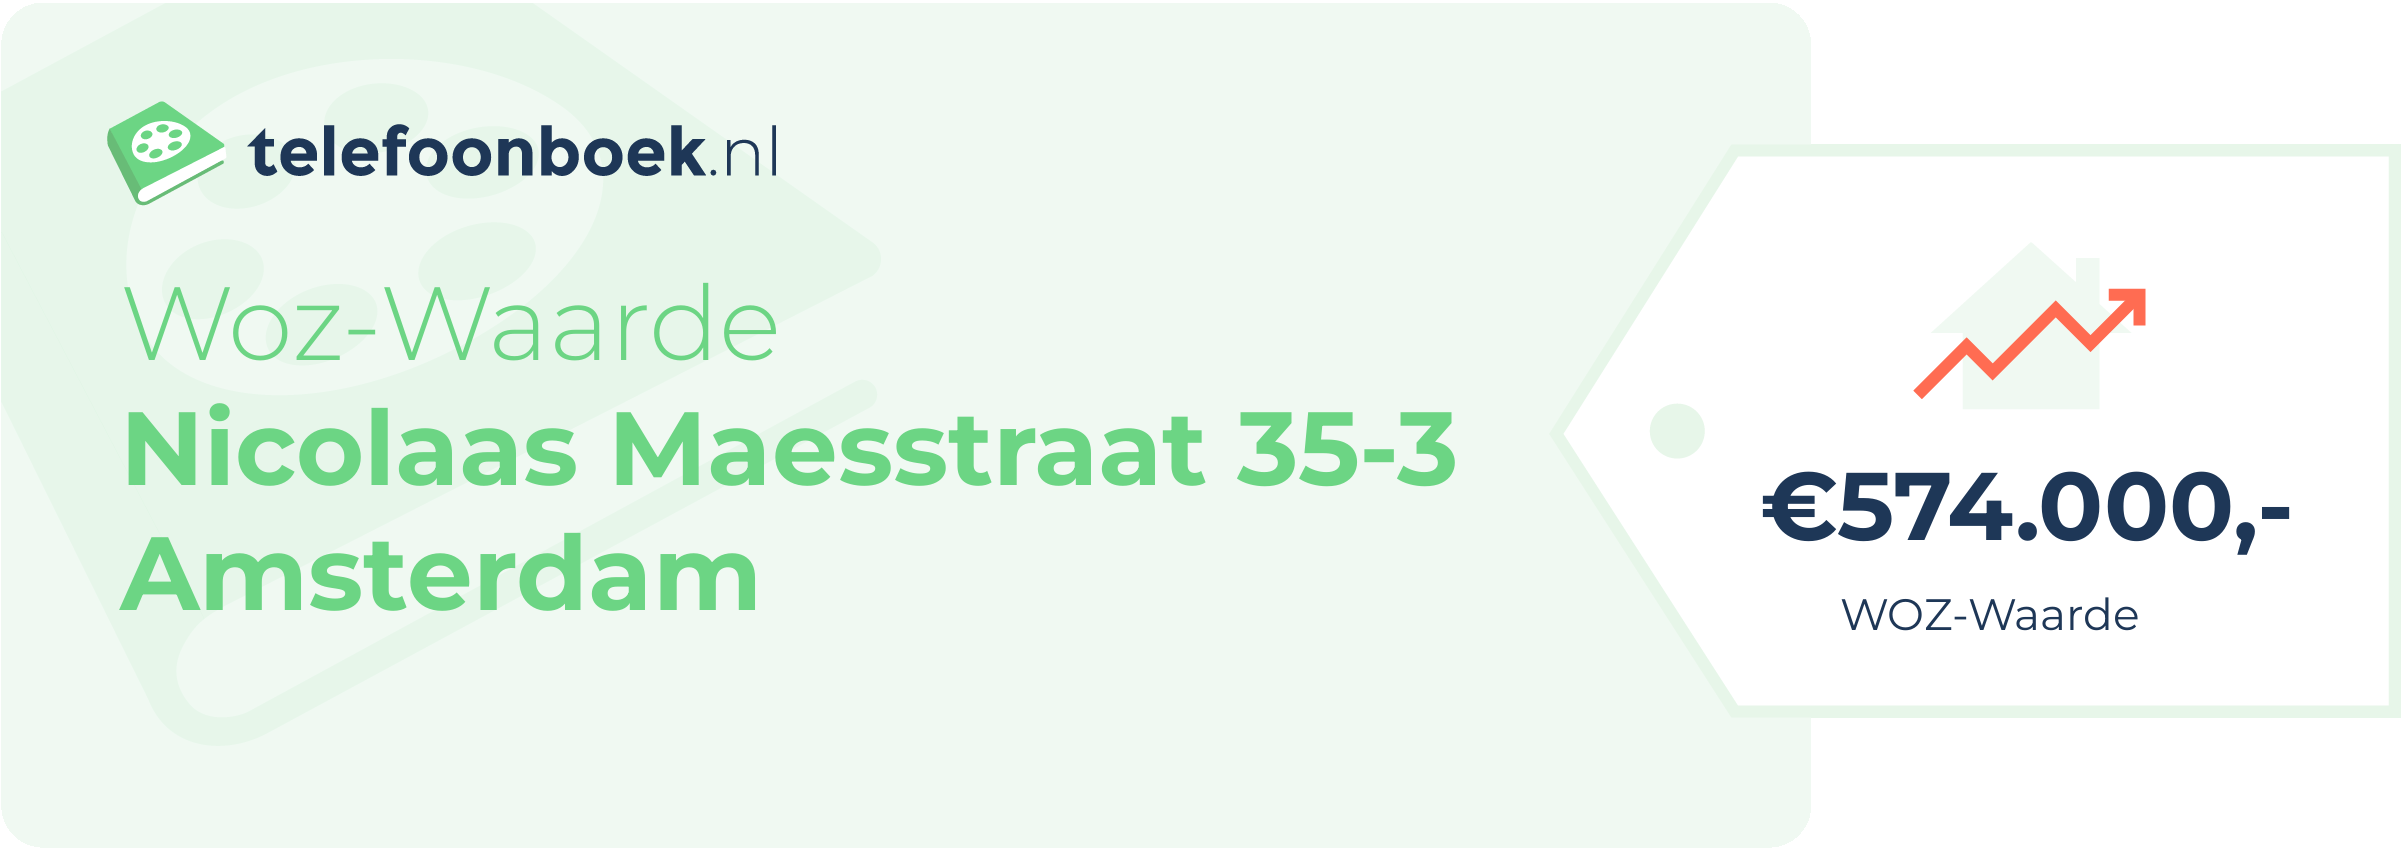 WOZ-waarde Nicolaas Maesstraat 35-3 Amsterdam